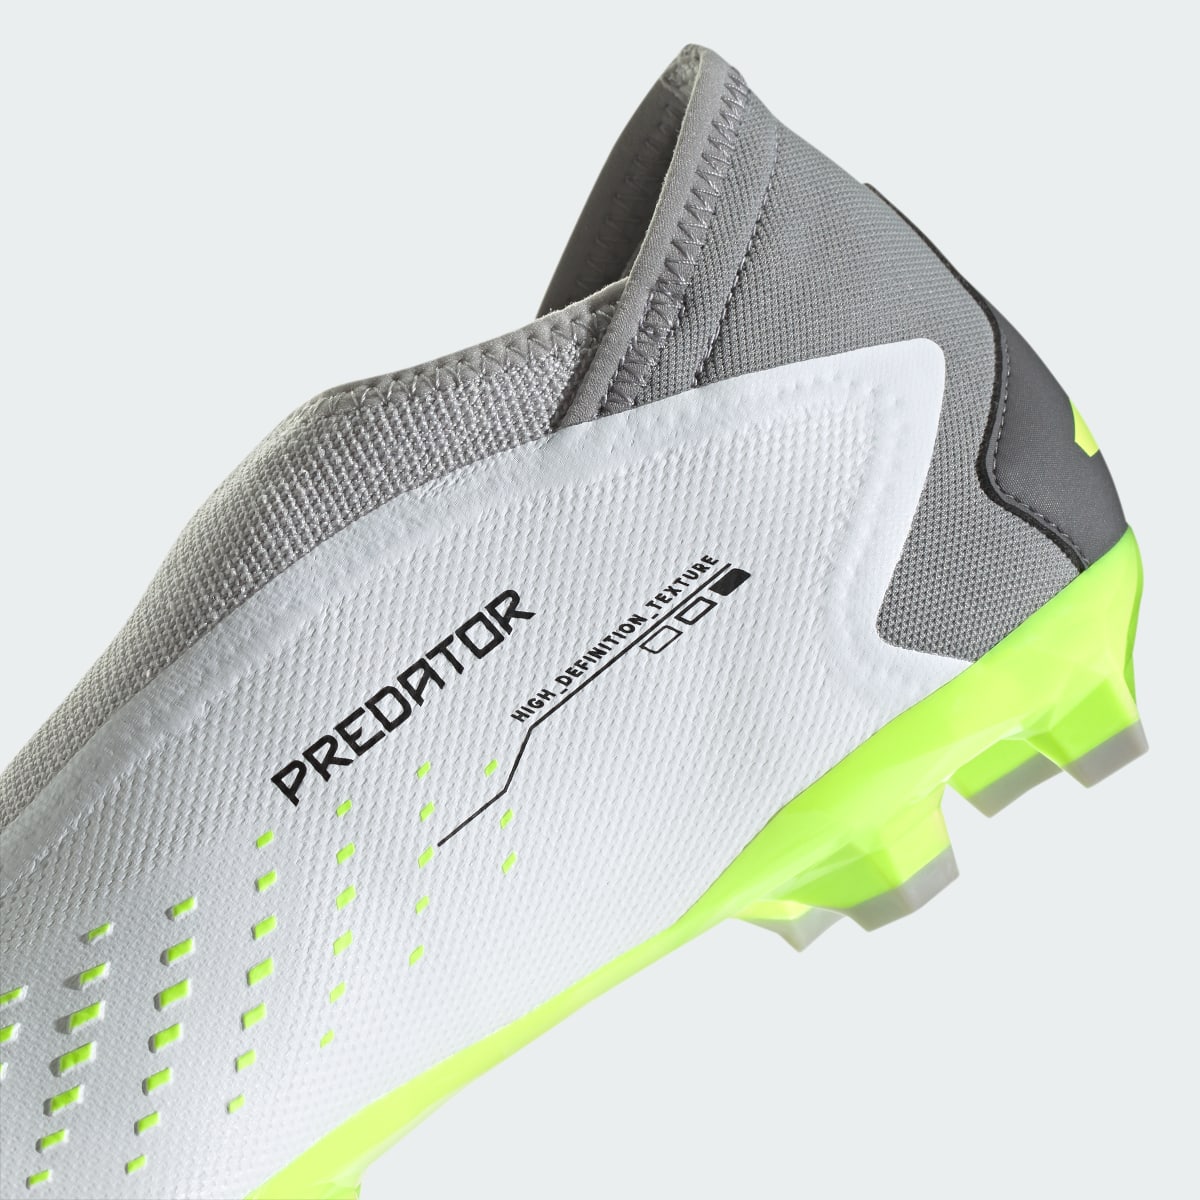 Adidas Calzado de Fútbol Predator Accuracy.3 Terreno Firme. 9